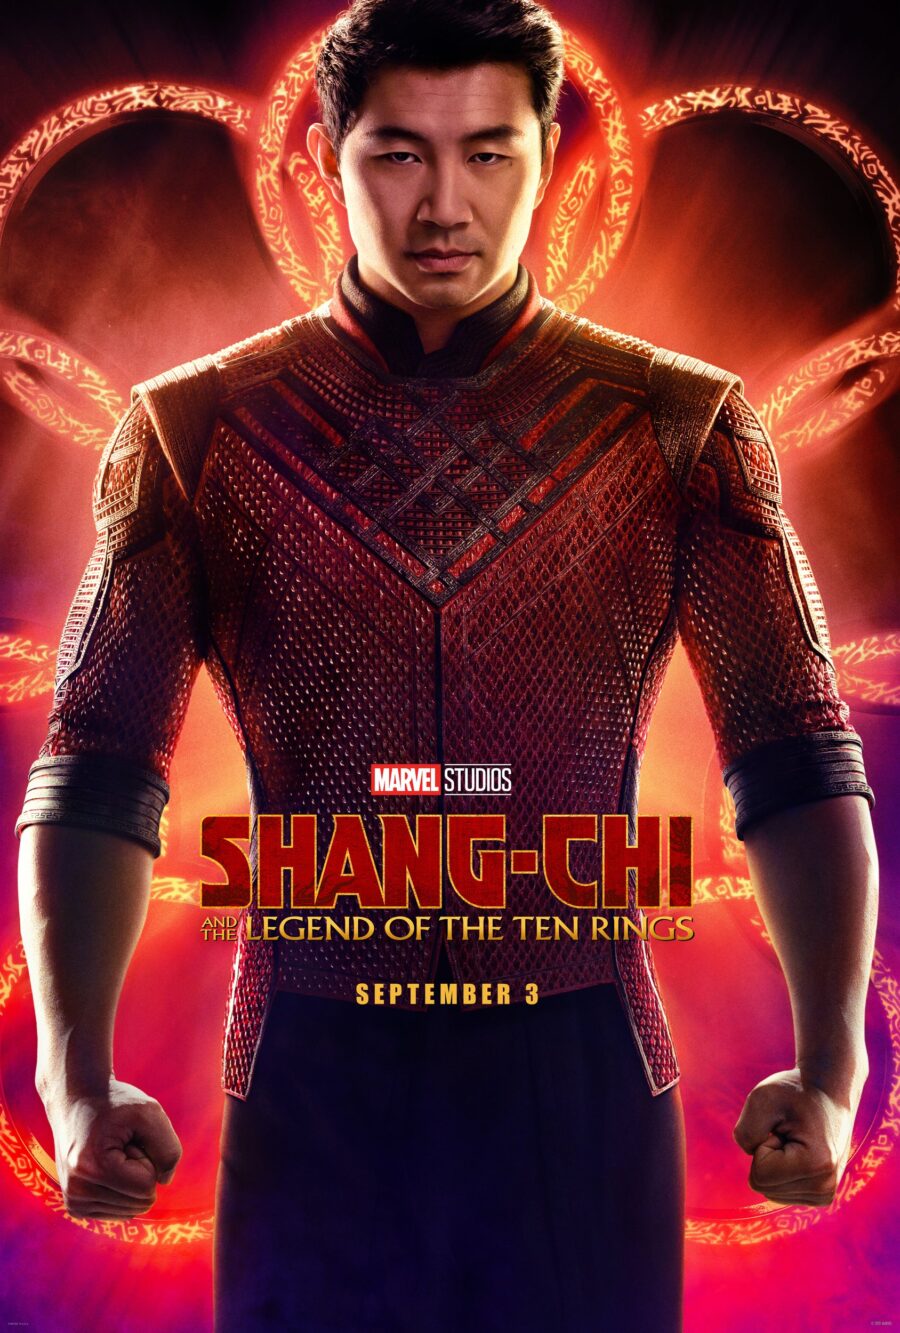 Shang-Chi trailer